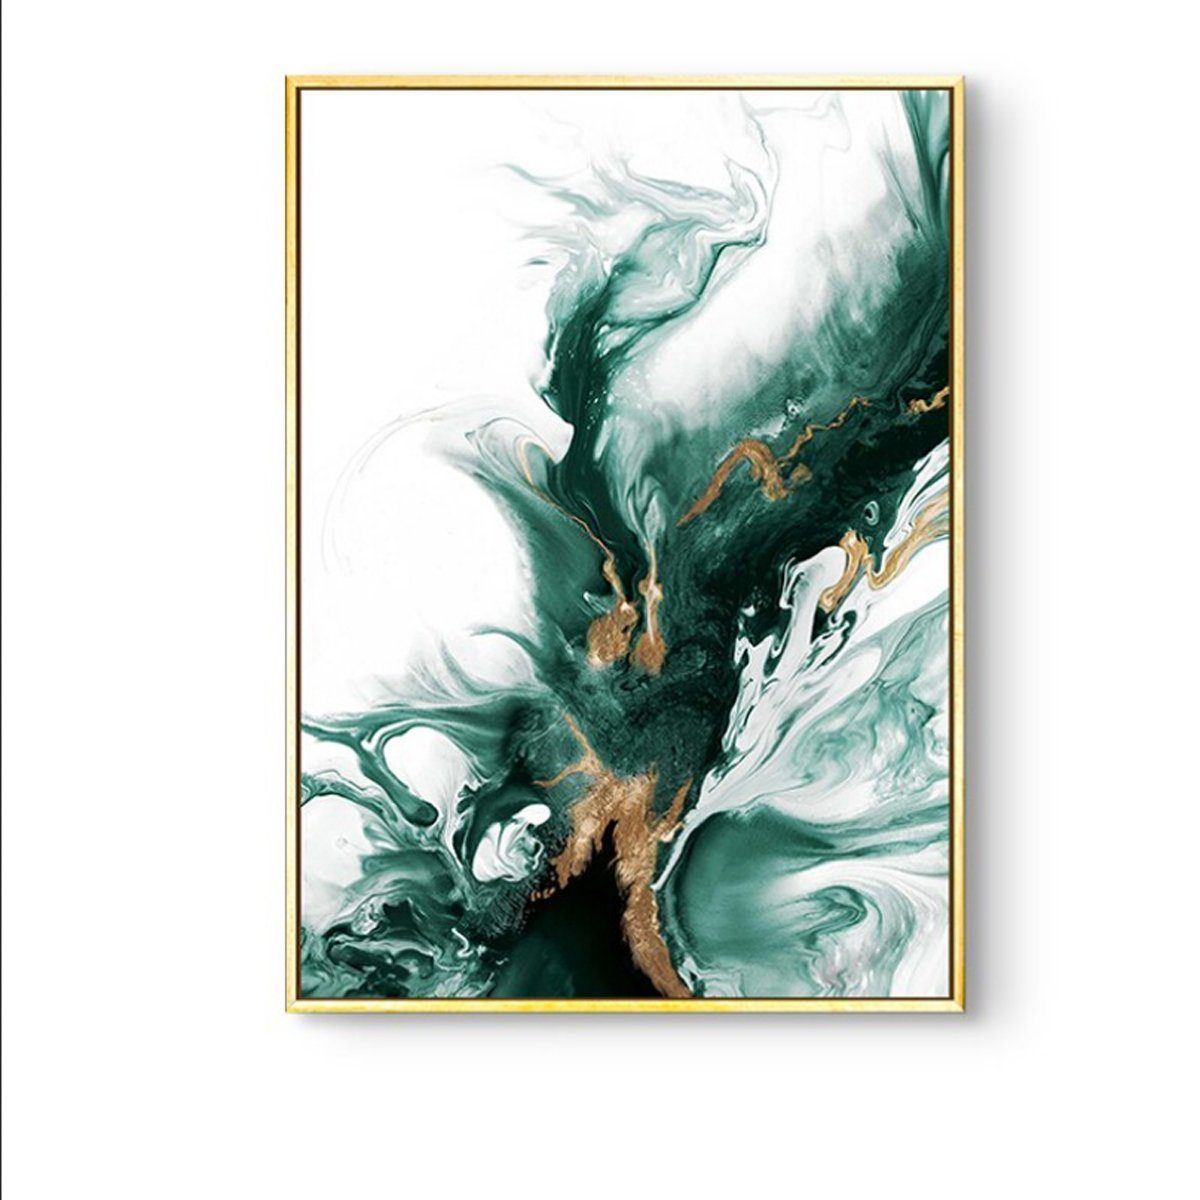 TPFLiving Kunstdruck (OHNE RAHMEN) Poster - Leinwand - Wandbild, Nordic Art - Abstrakte Formen - Bilder Wohnzimmer - (4 Motive in 7 verschiedenen Größen zur Auswahl), Farben: gold, grün, schwarz und weiß - Größe: 21x30cm